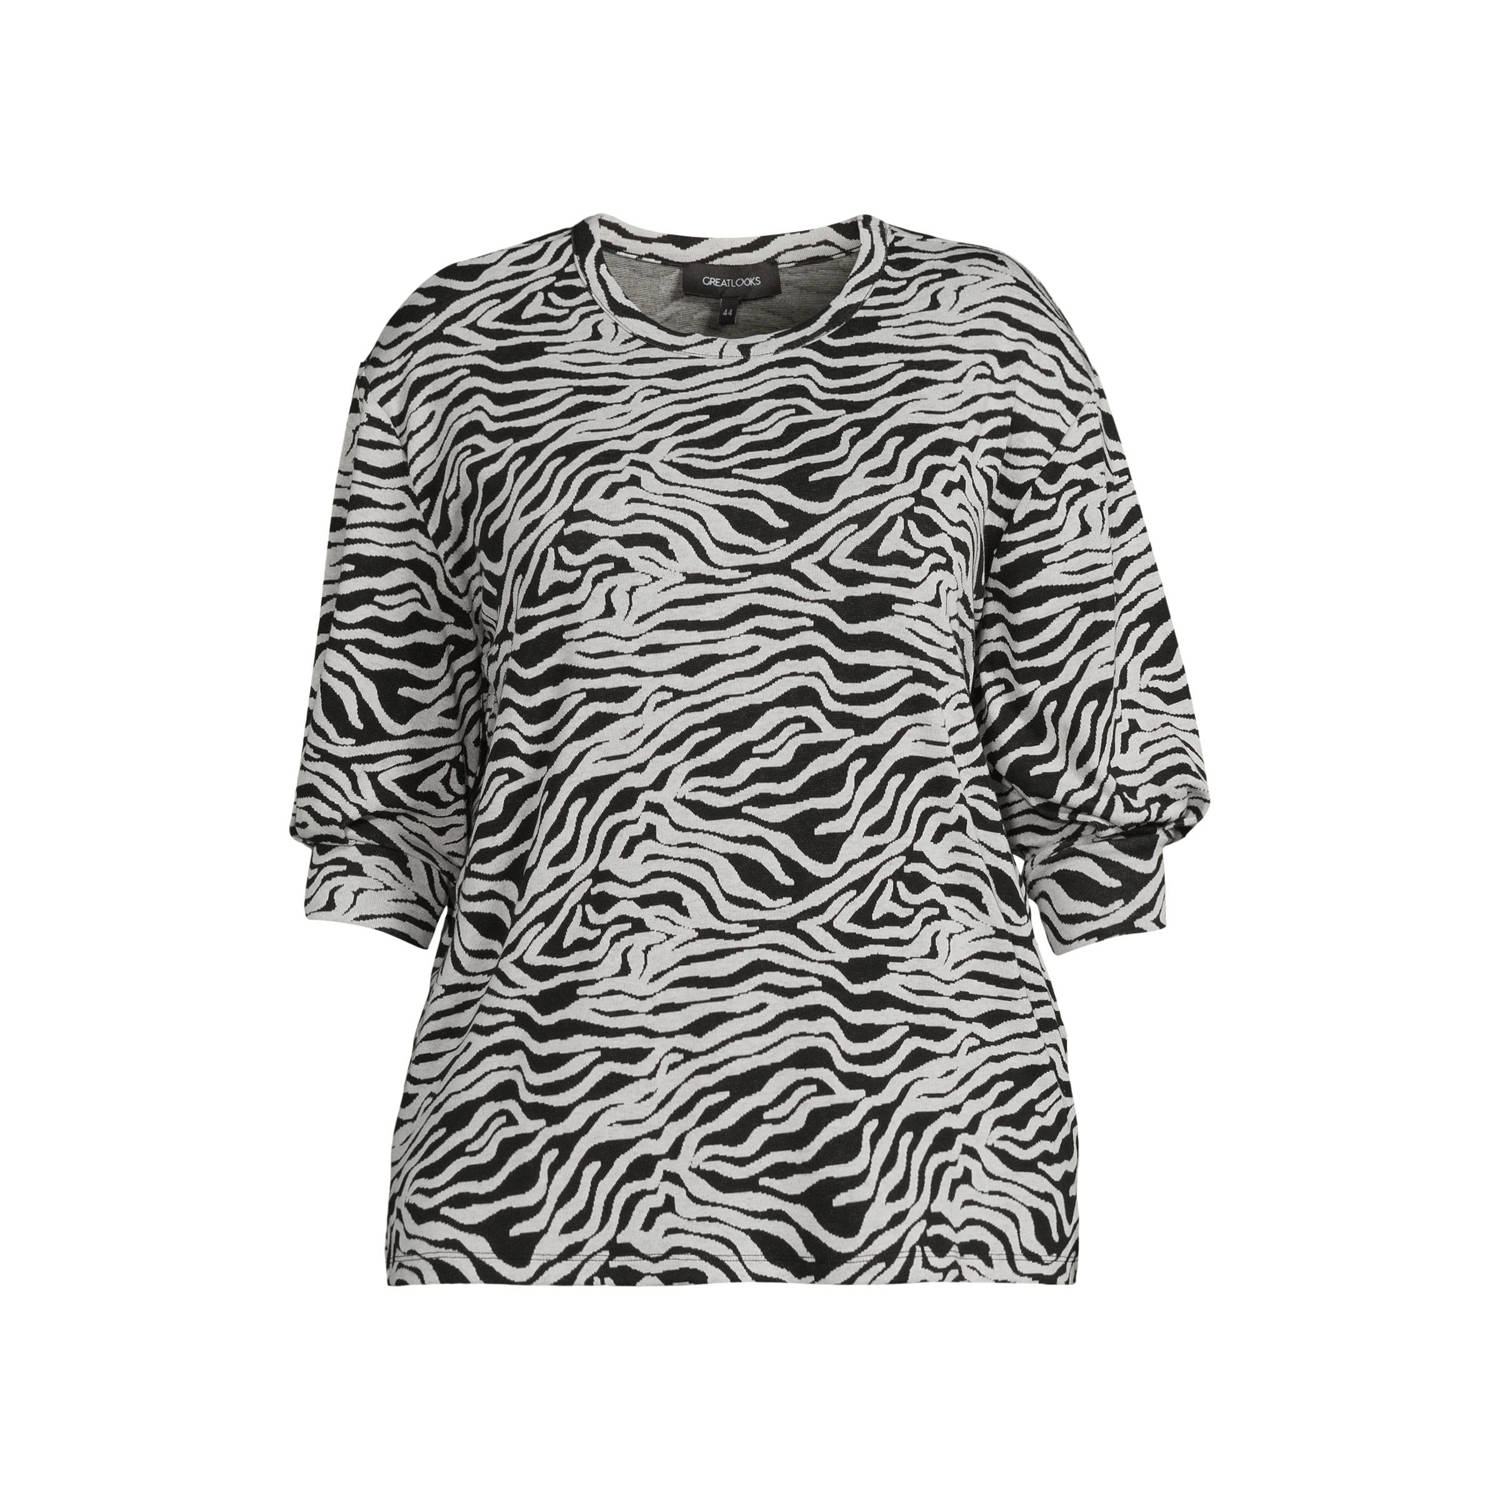 GREAT LOOKS tuniek met zebraprint wit zwart